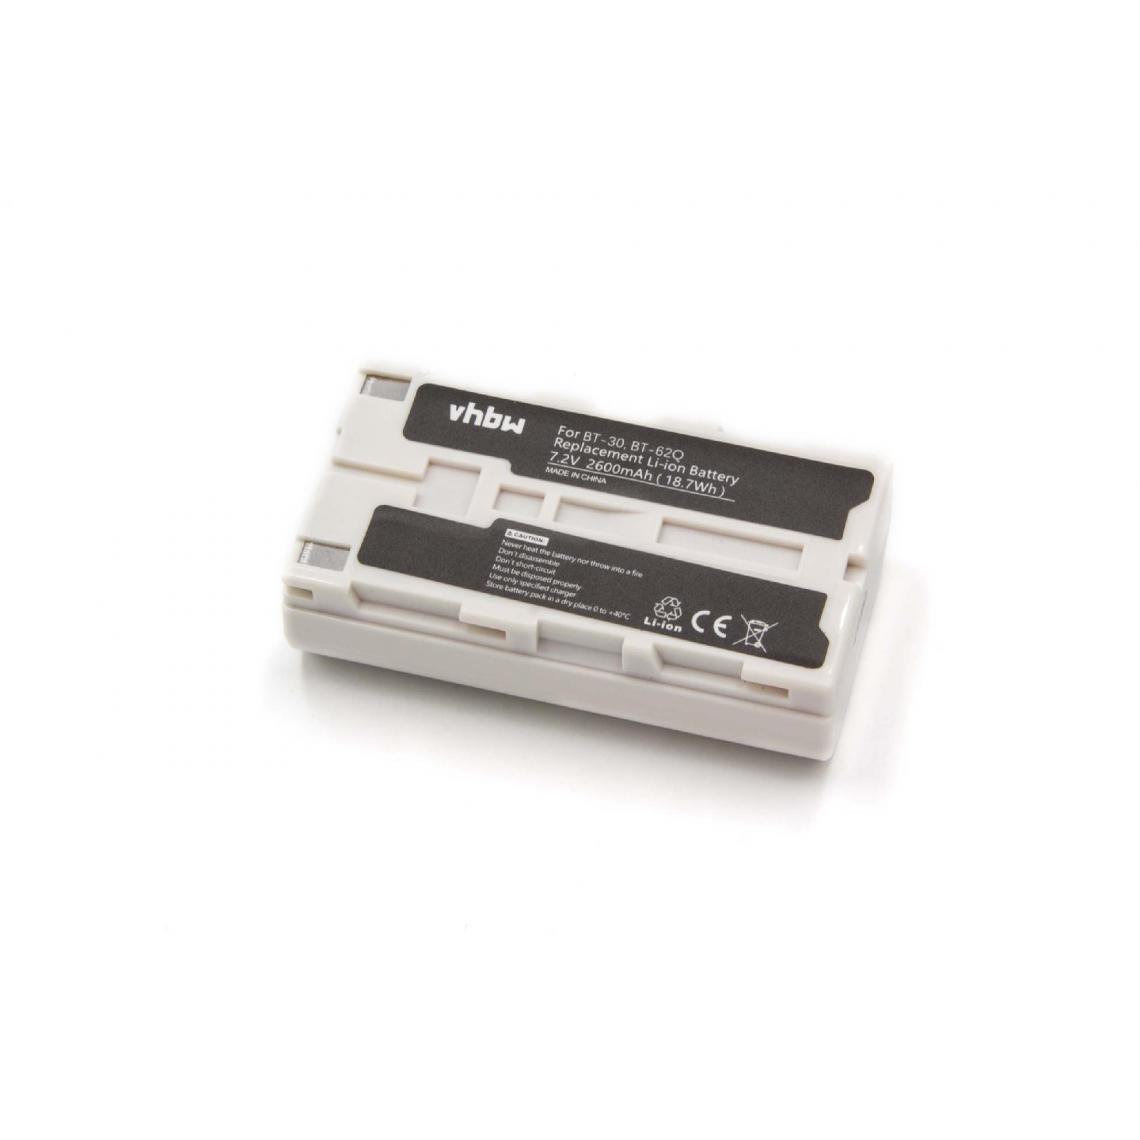 Vhbw - vhbw Batterie compatible avec Topcon Field Controller GPT-7000i, GPT-7500, GPT-9000, GPT9000A outil de mesure (2600mAh, 7,4V, Li-ion) - Piles rechargeables